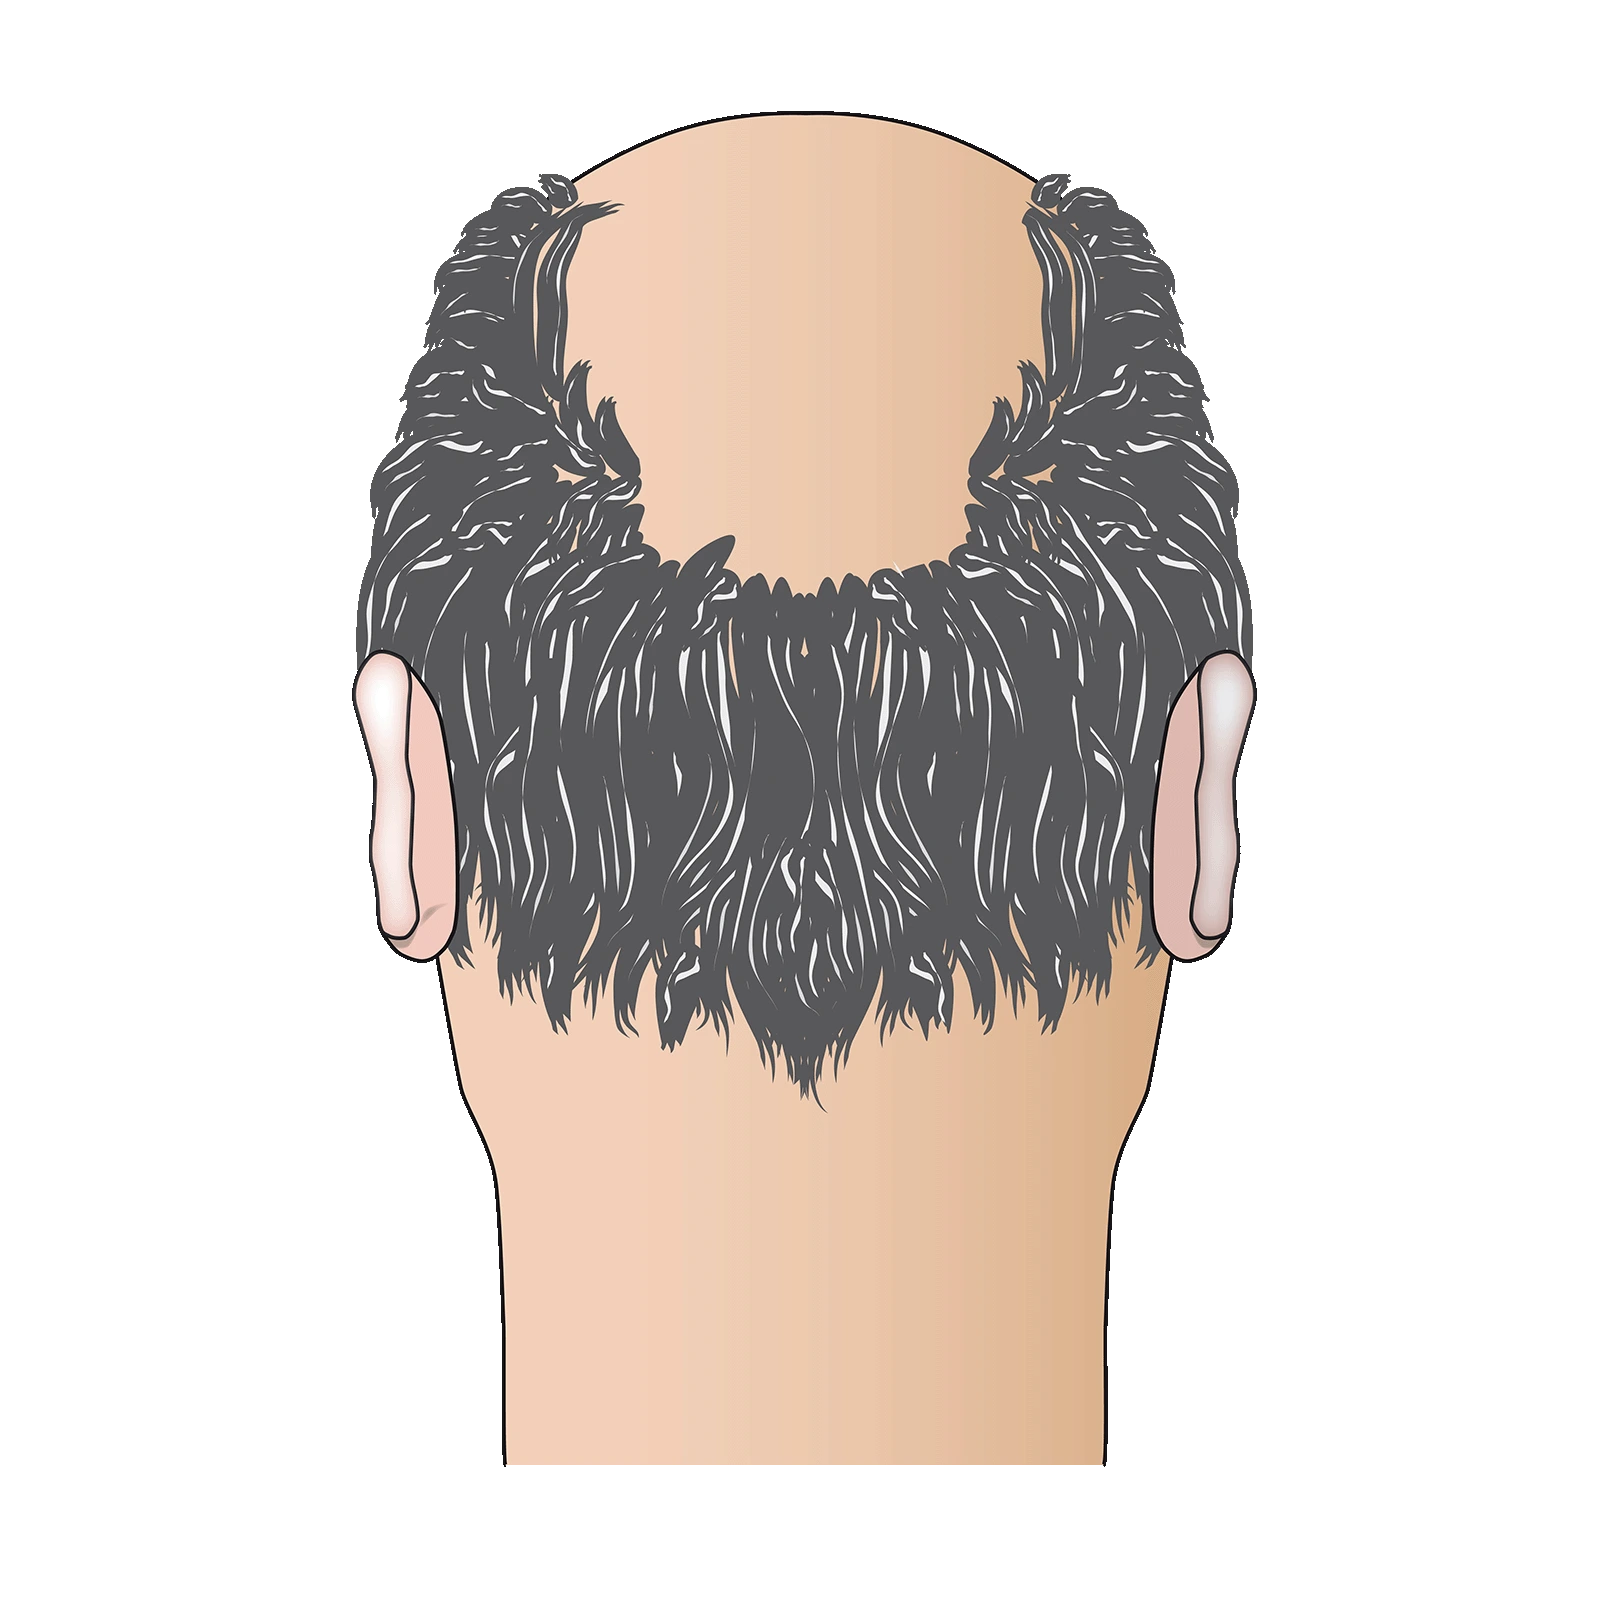 Schritt 1 und Ausgangslage vor der Haartransplantation: Grafik eines männlichen Hinterkopfes, wo auf dem Kopf kahle Stellen (Glatze) sind